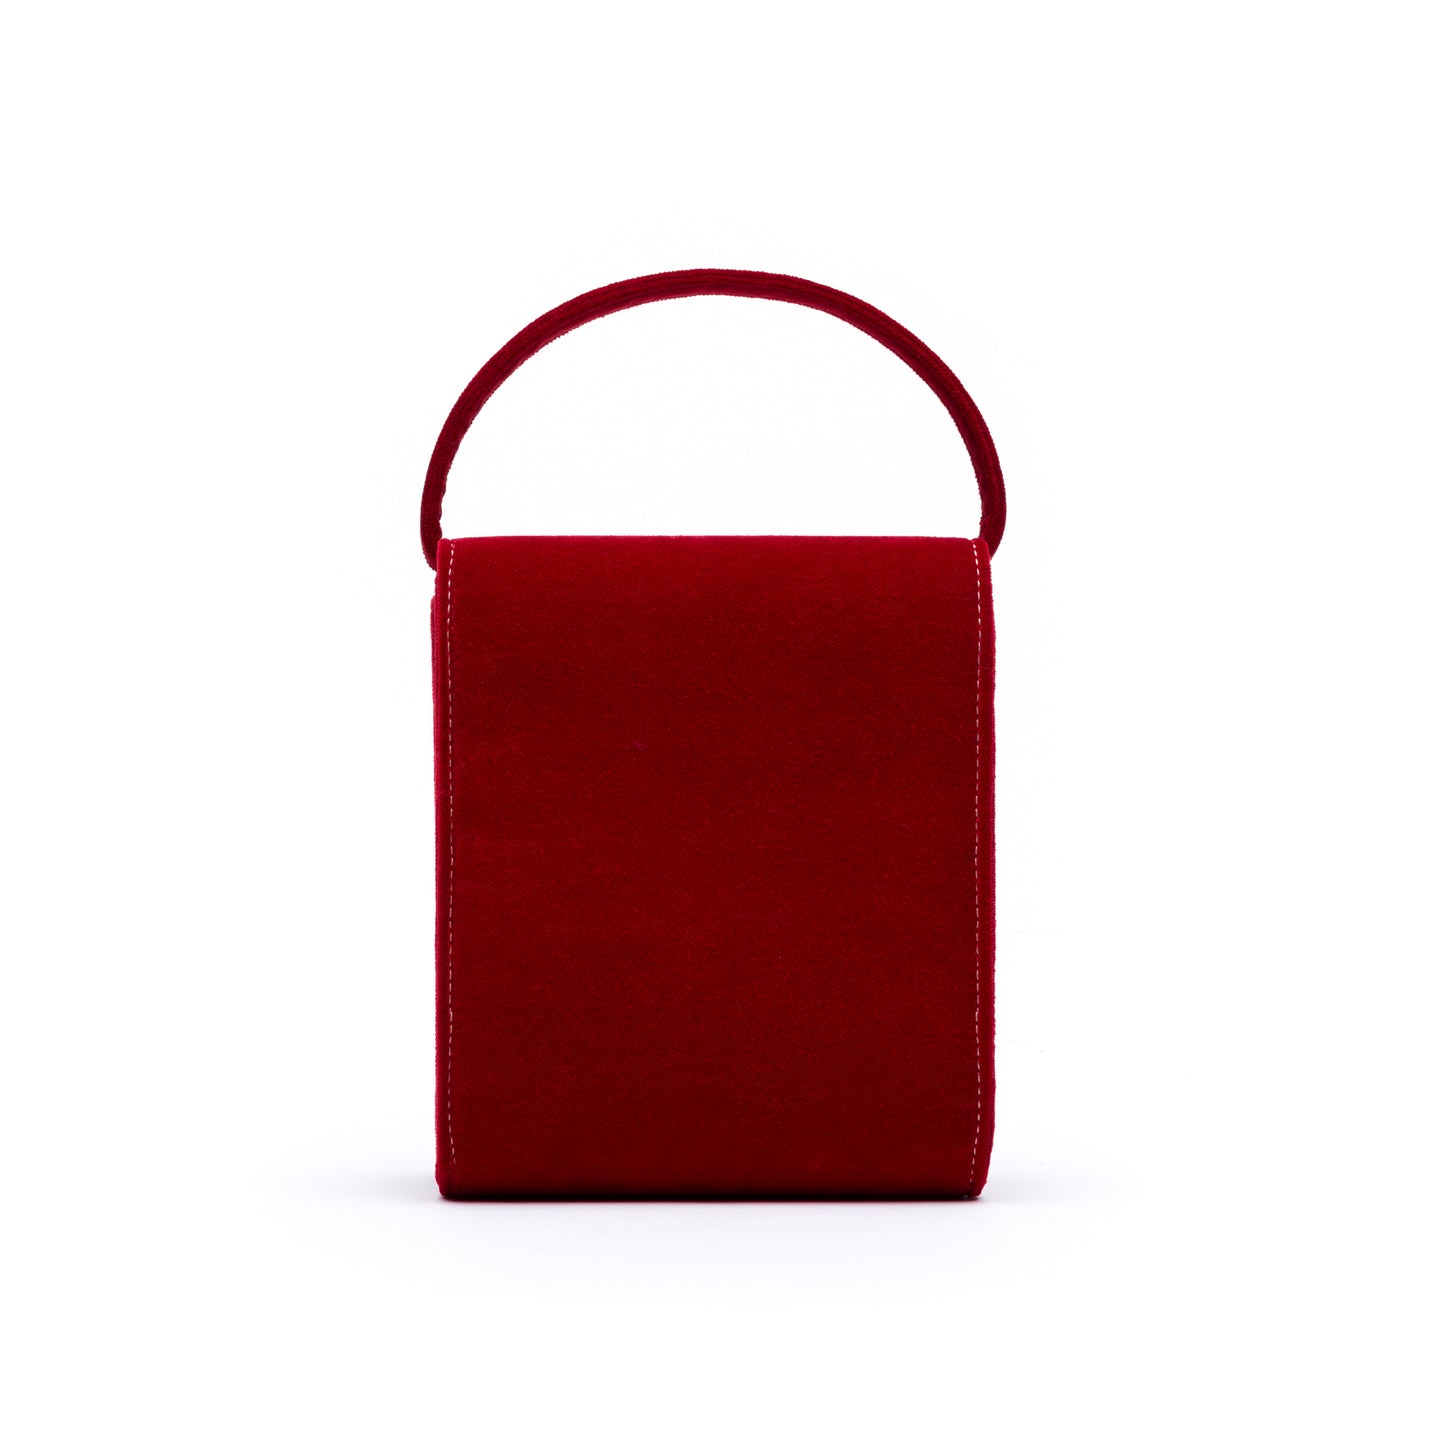 Cucci- Red Velvet Bag